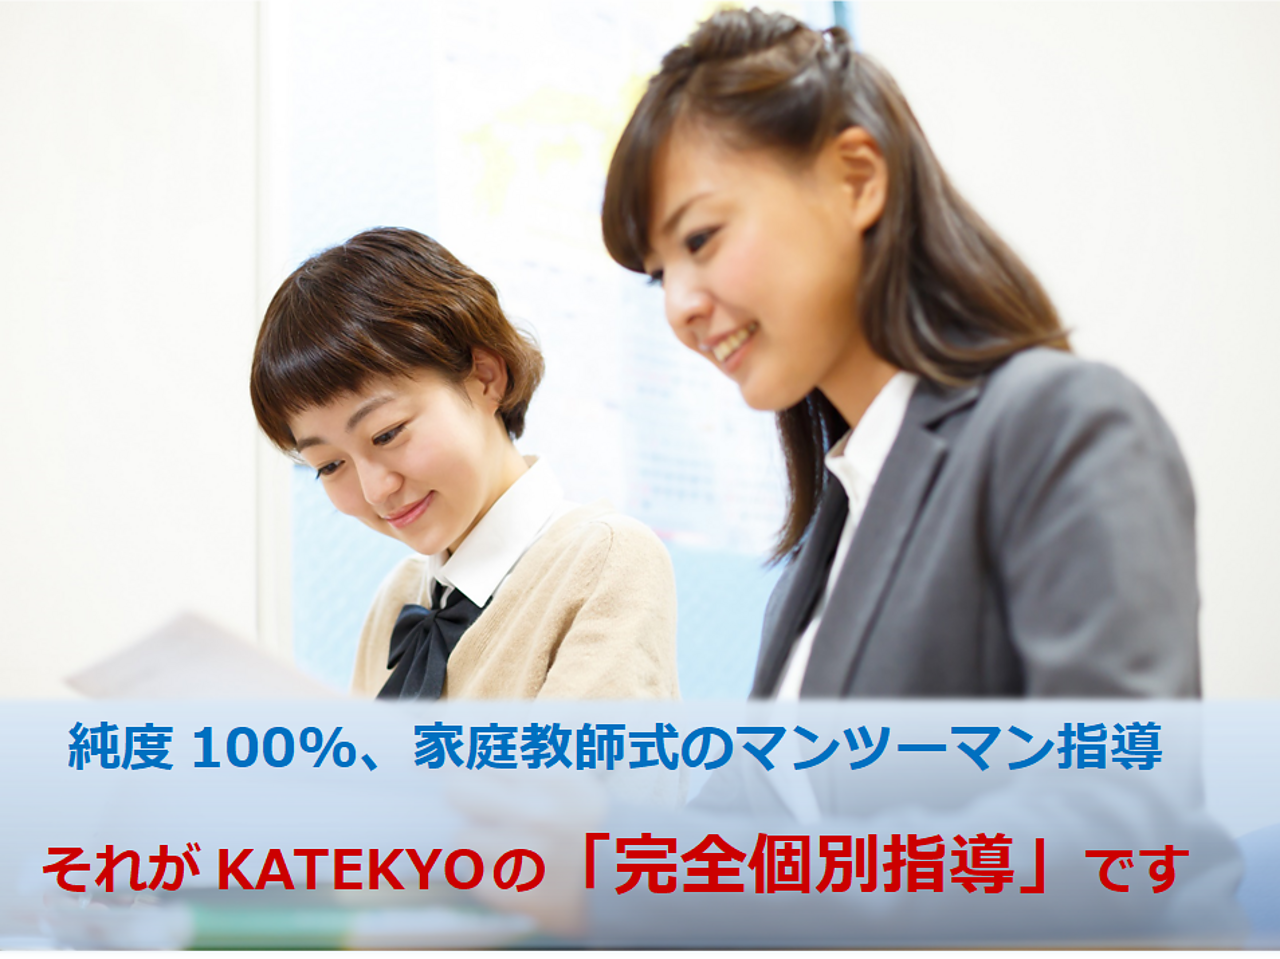 KATEKYO学院【長野】の画像